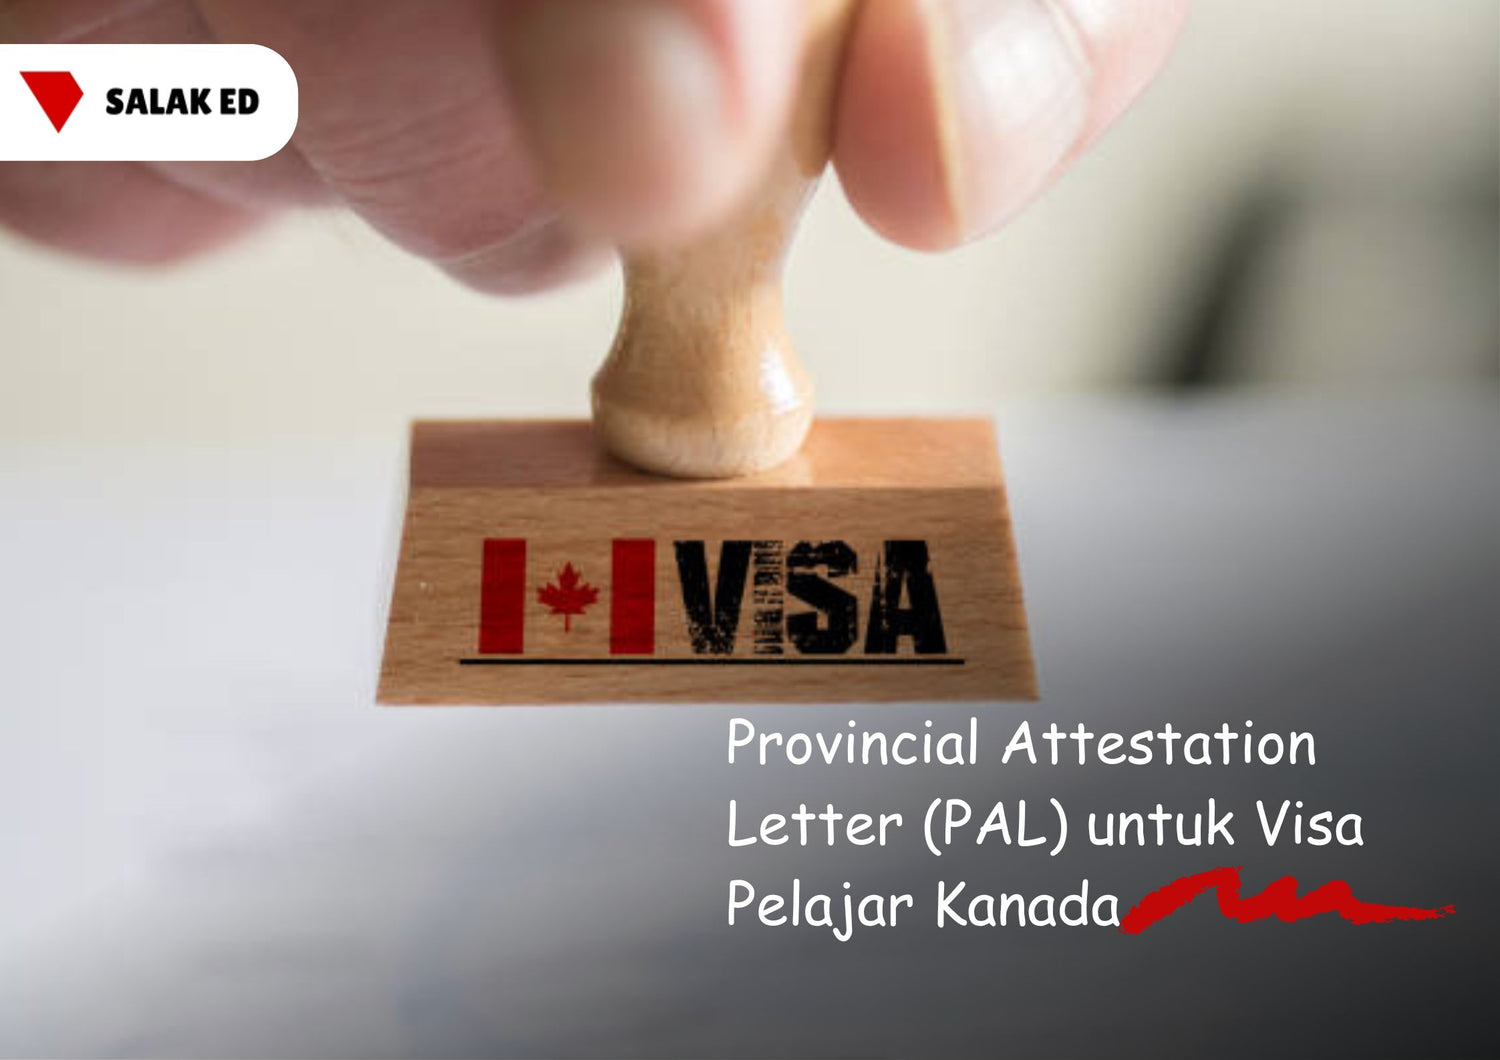 Provincial Attestation Letter (PAL) untuk Visa Pelajar Kanada